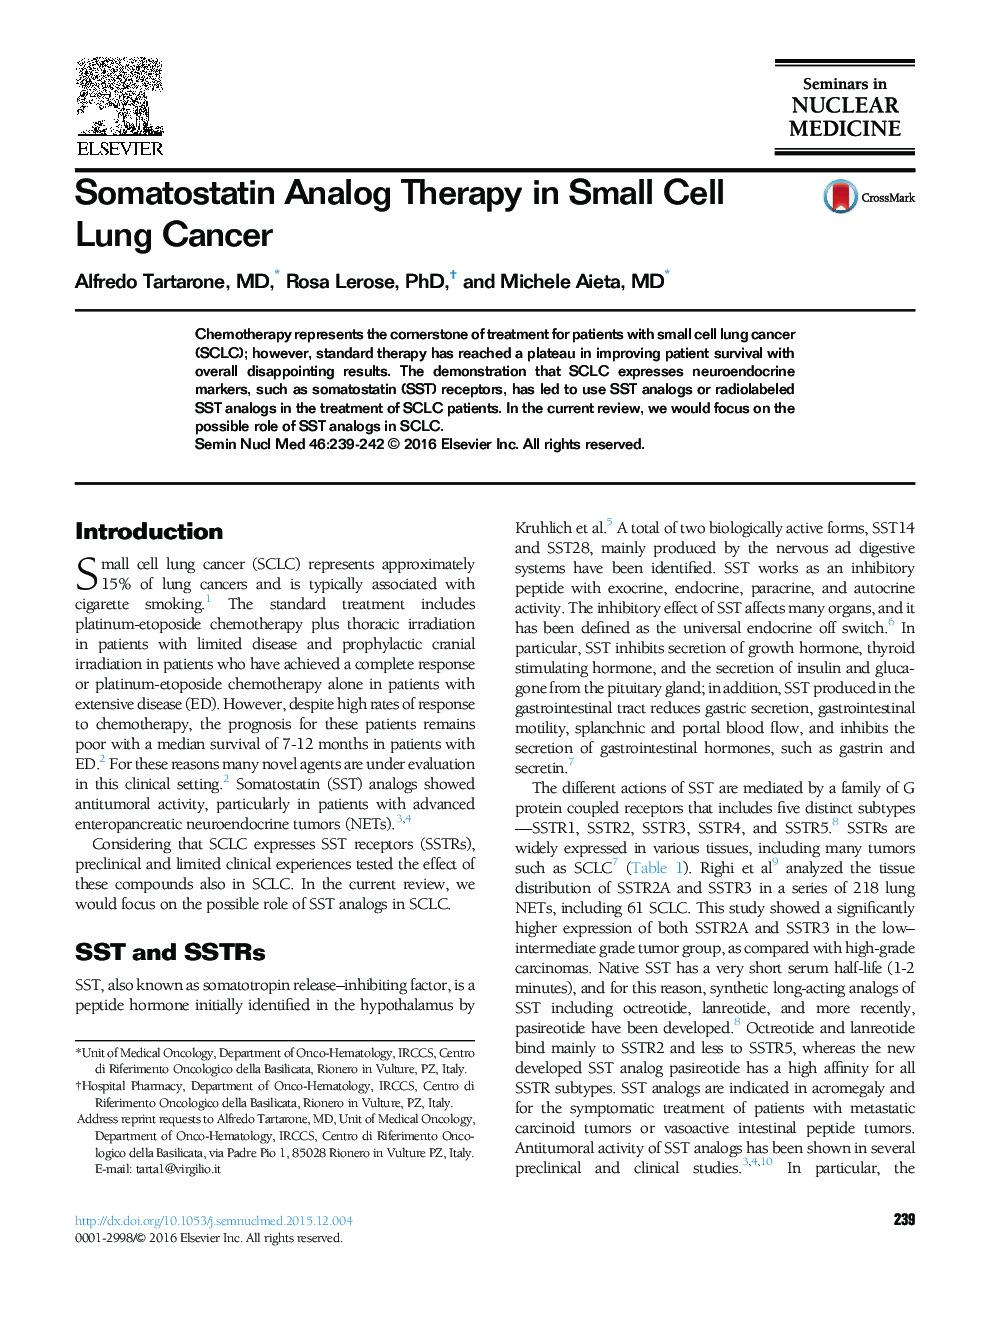 درمان آنالوگ سوماتوستاتین در سرطان سلول های کوچک سلولی 